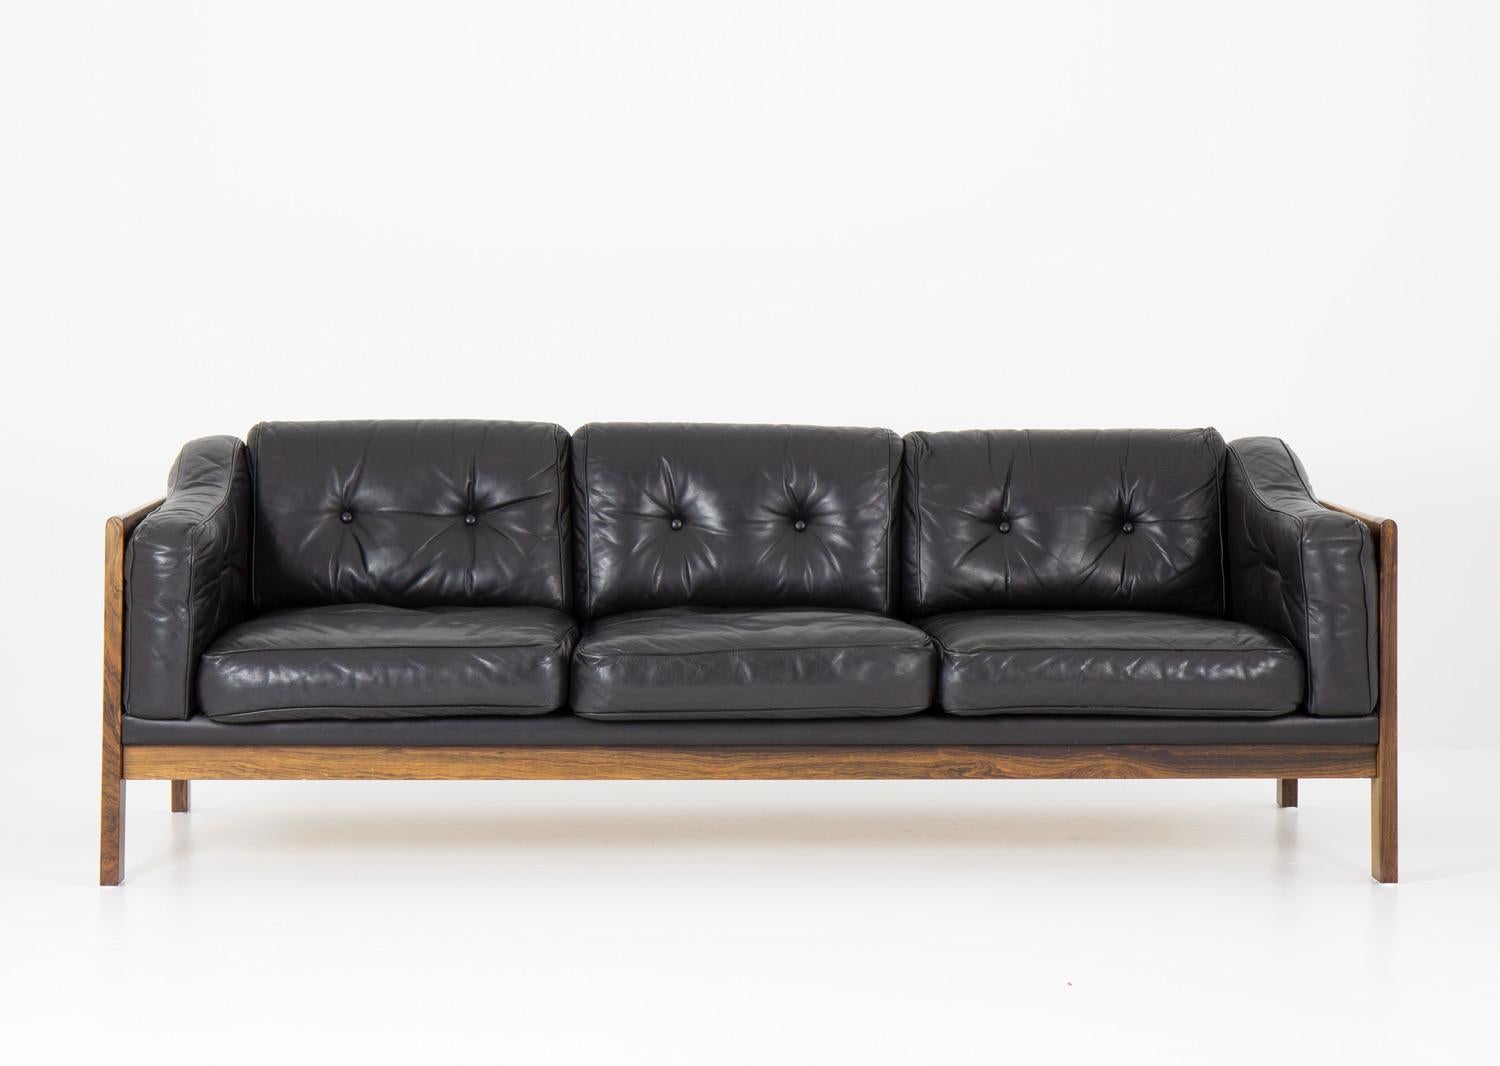 Canapé de salon de grande qualité conçu par Ingvar Stockum pour Futura Möbler en 1965. 

Son magnifique cadre et son profil bas ajoutent à l'élégance de ce canapé.

La série 